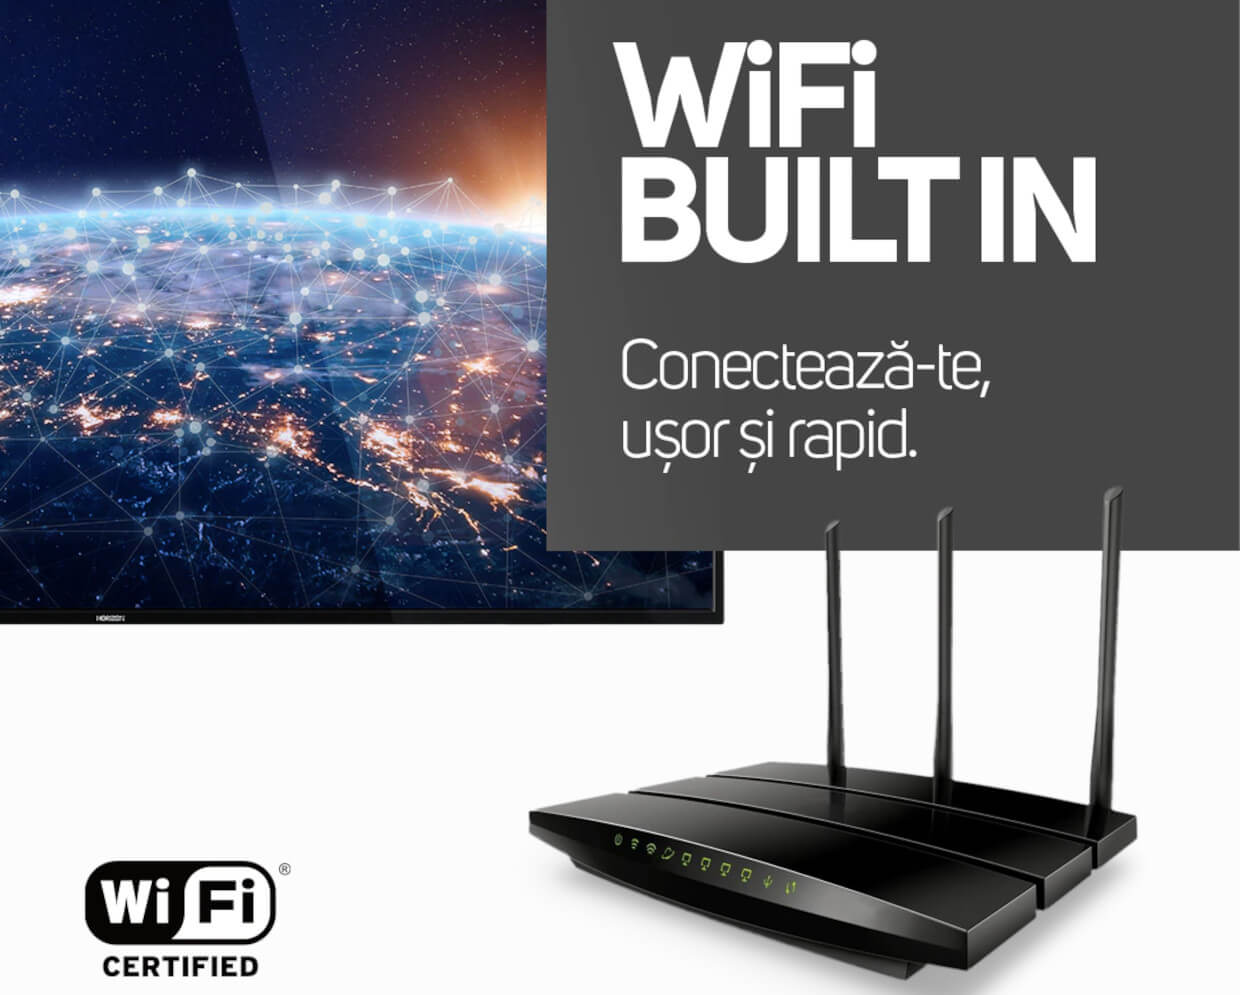 Wi-Fi integrat. Comunica fara cabluri!